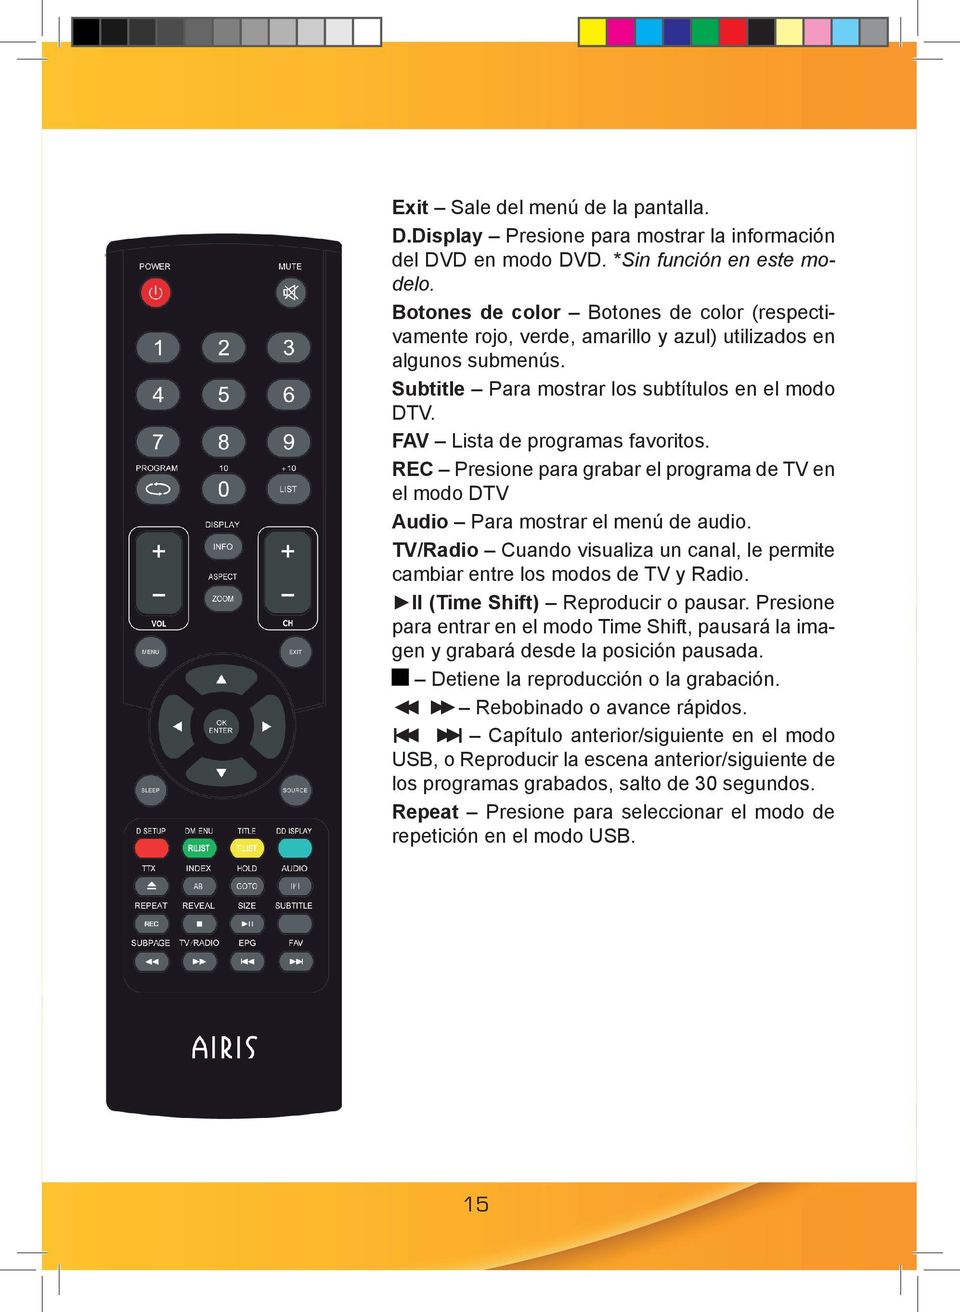 REC Presione para grabar el programa de TV en el modo DTV Audio Para mostrar el menú de audio. TV/Radio Cuando visualiza un canal, le permite cambiar entre los modos de TV y Radio.